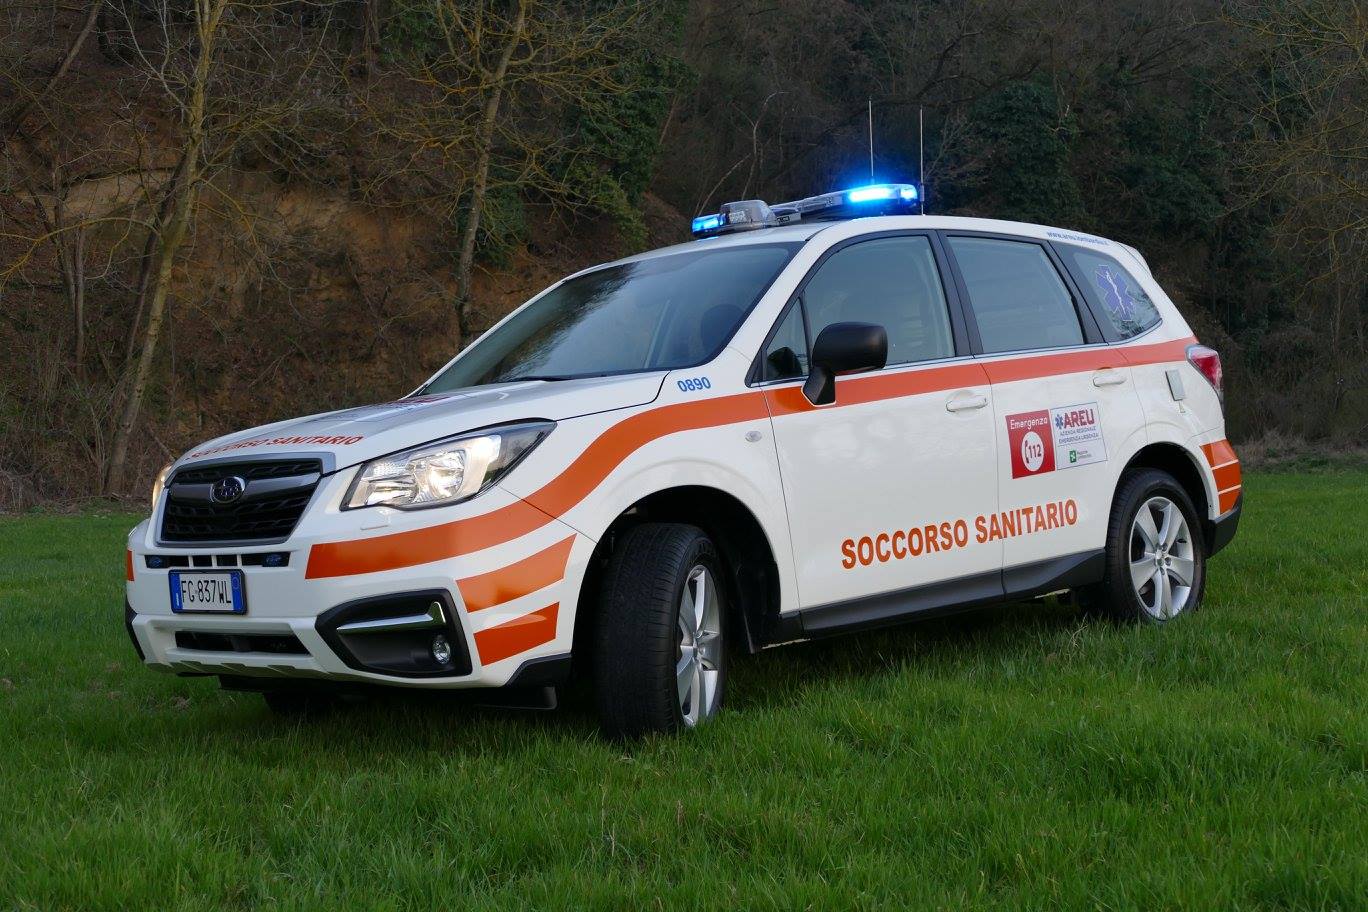 Sono arrivate le prime automediche NUE112, il debutto in Lombardia con Papa Francesco è stato un successo | Emergency Live 14